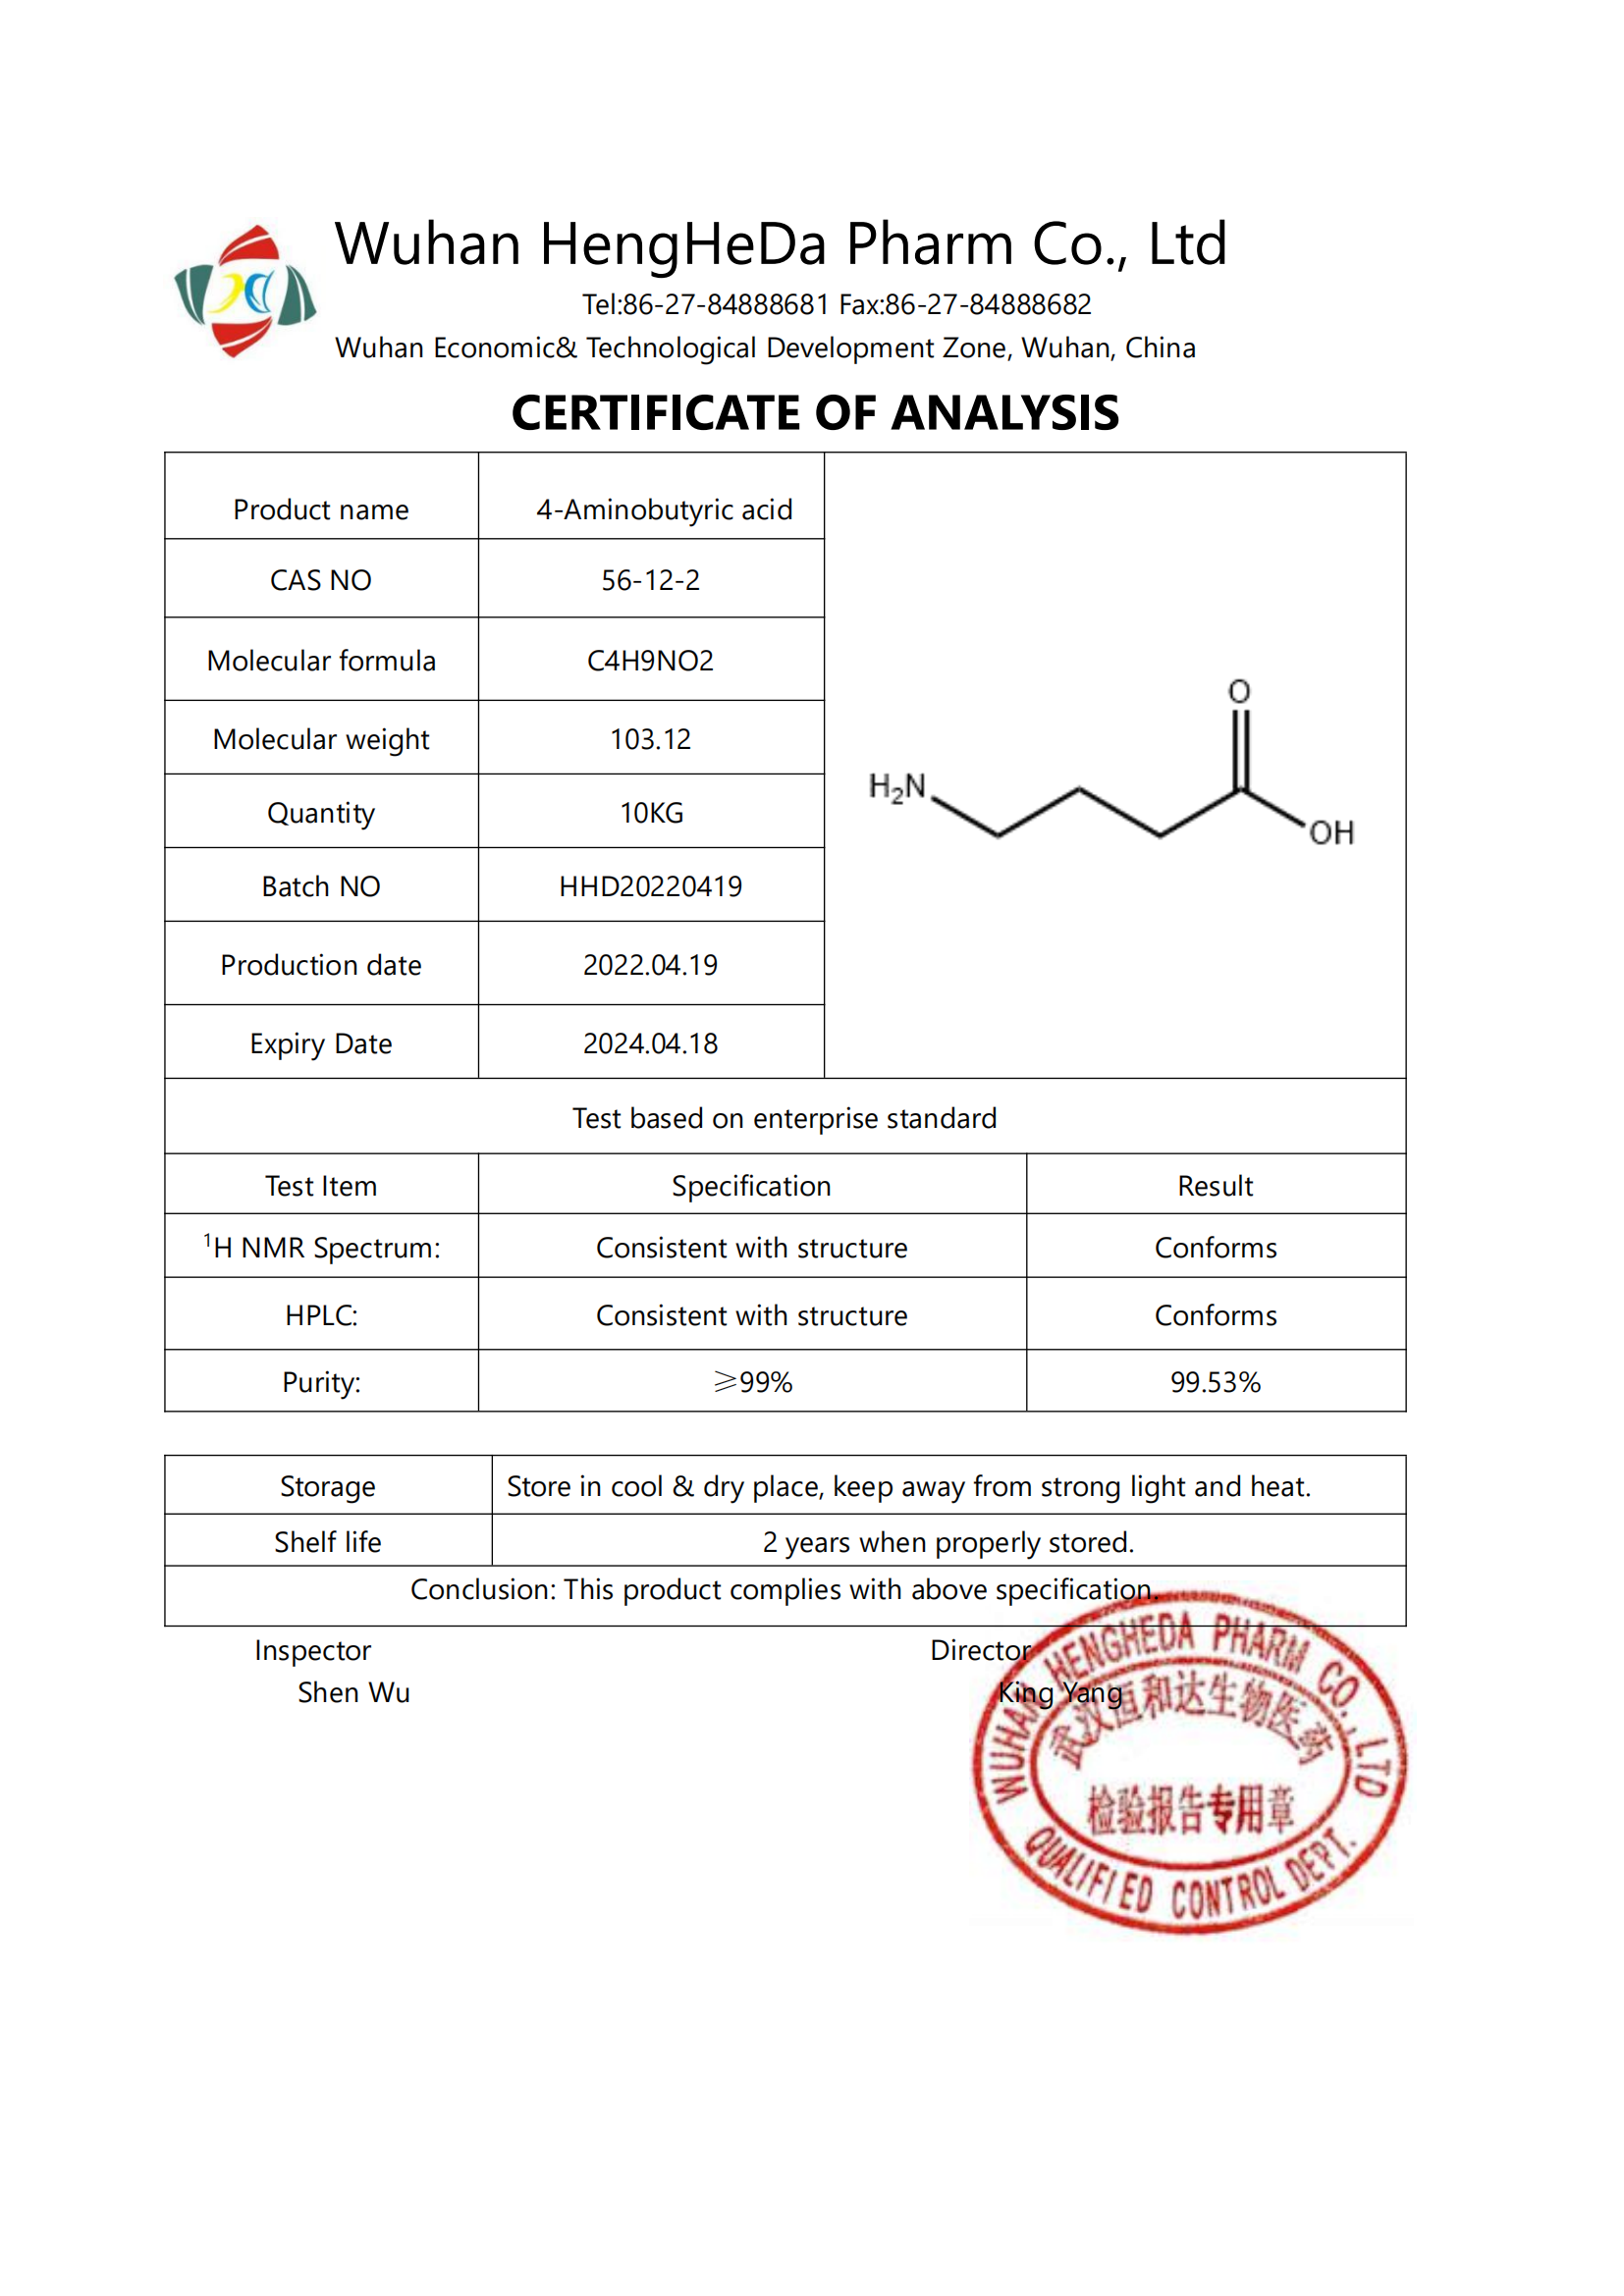 Acquista Acido 4-amminobutirrico CAS 56-12-2 di alta qualità,Acido 4-amminobutirrico CAS 56-12-2 di alta qualità prezzi,Acido 4-amminobutirrico CAS 56-12-2 di alta qualità marche,Acido 4-amminobutirrico CAS 56-12-2 di alta qualità Produttori,Acido 4-amminobutirrico CAS 56-12-2 di alta qualità Citazioni,Acido 4-amminobutirrico CAS 56-12-2 di alta qualità  l'azienda,